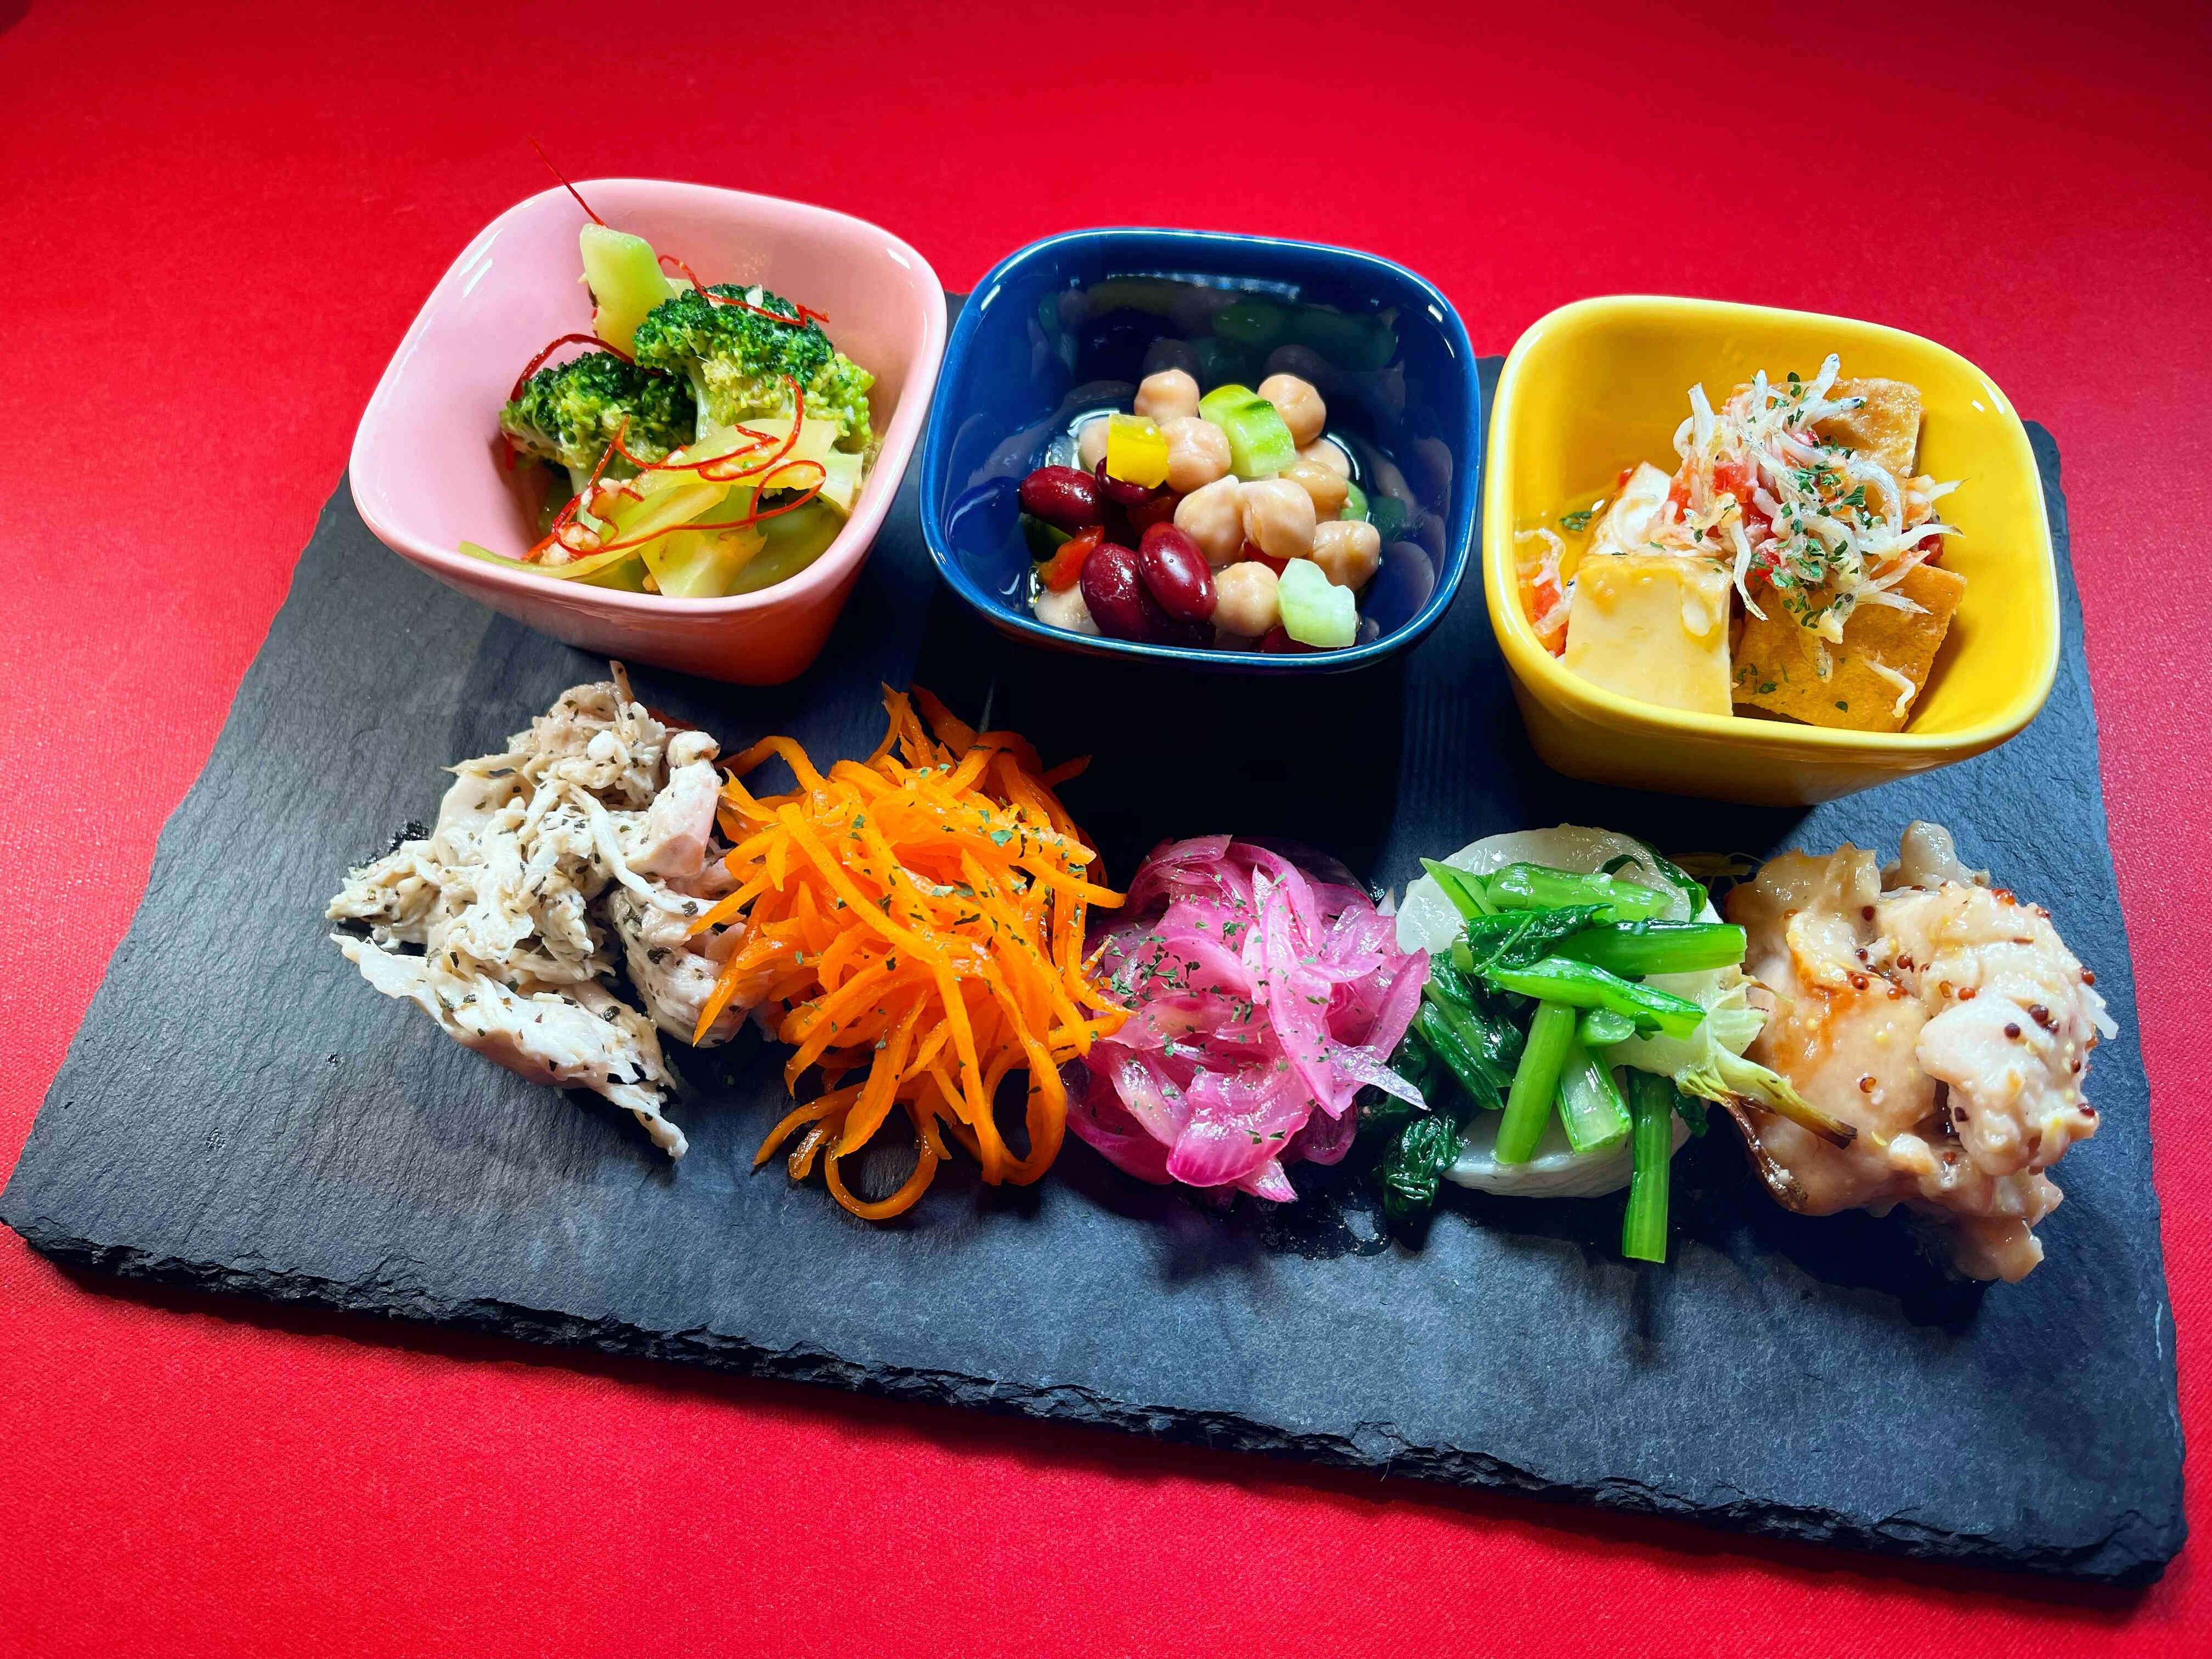 【人気DELIの盛合せ】静岡の恵みをふんだんに使った人気洋風惣菜の盛合せ。数種類を楽しめます。